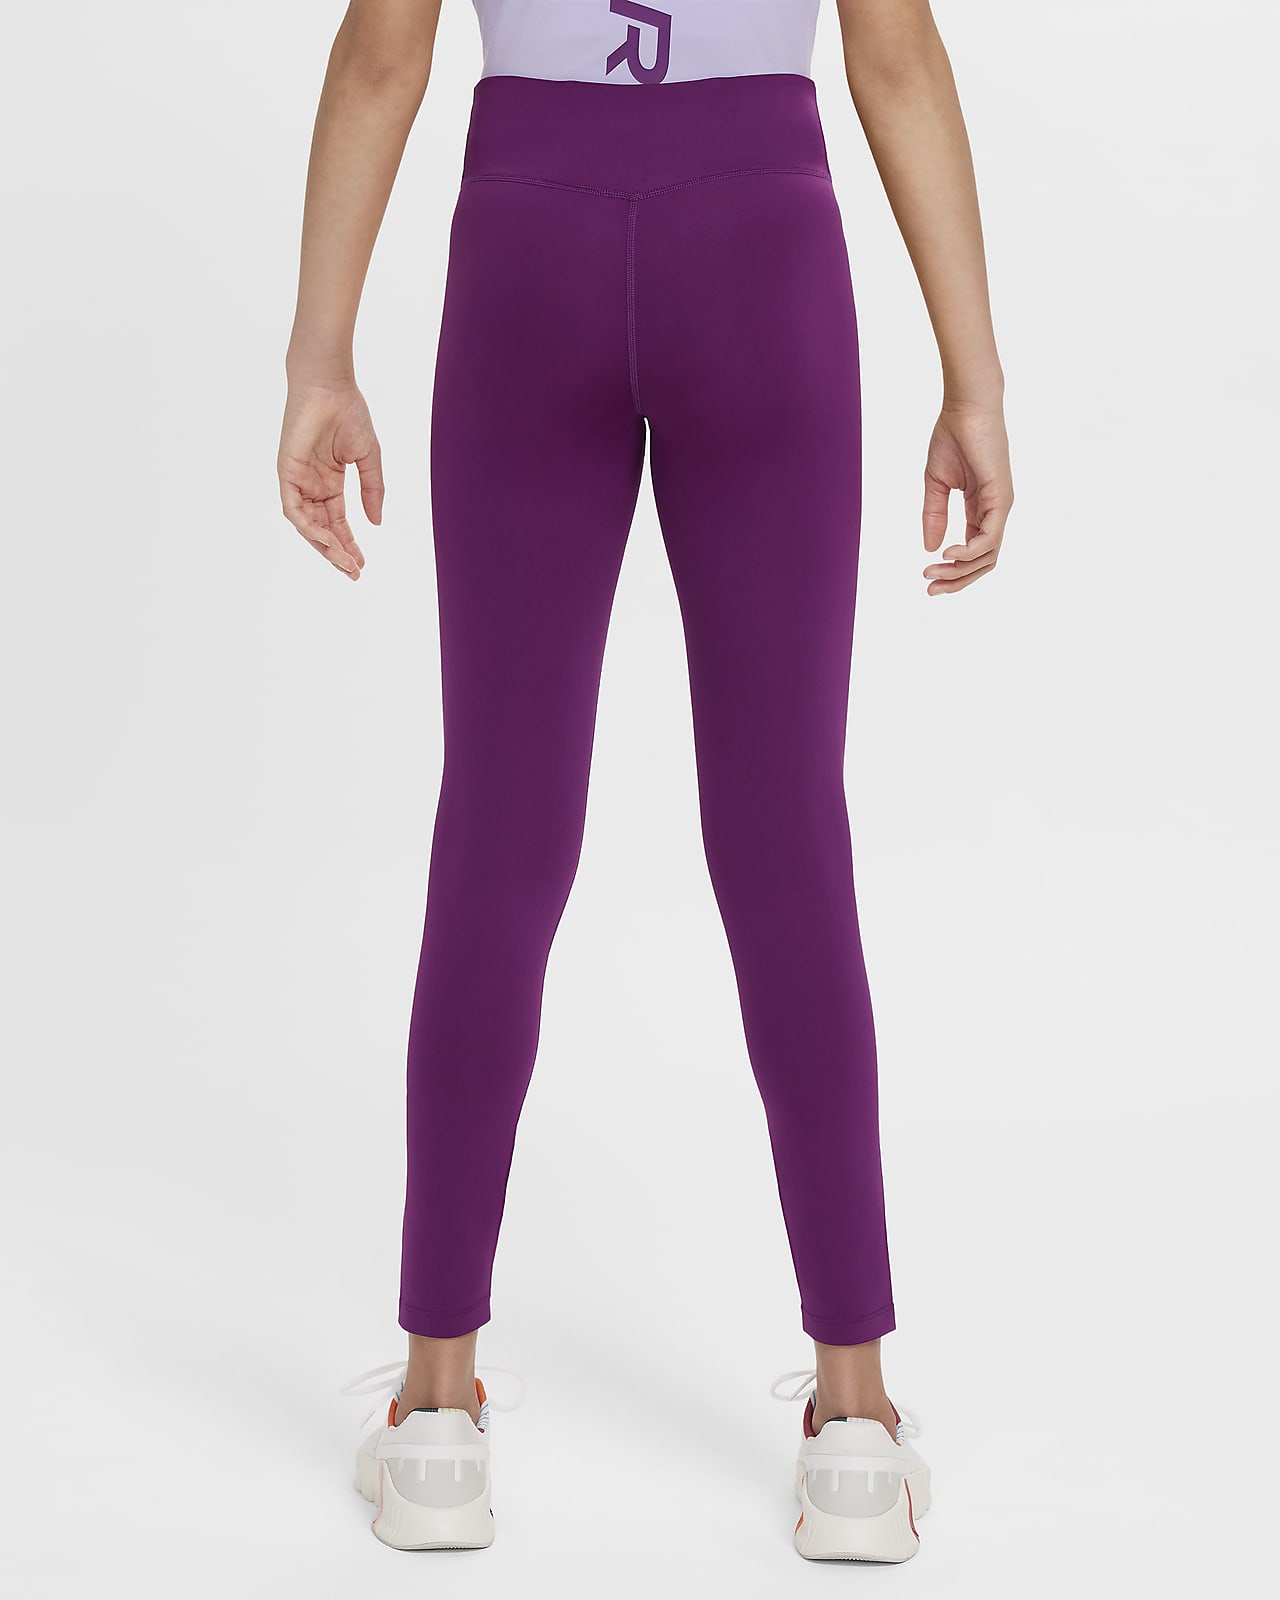 Purple Dri-FIT Pants & Tights.